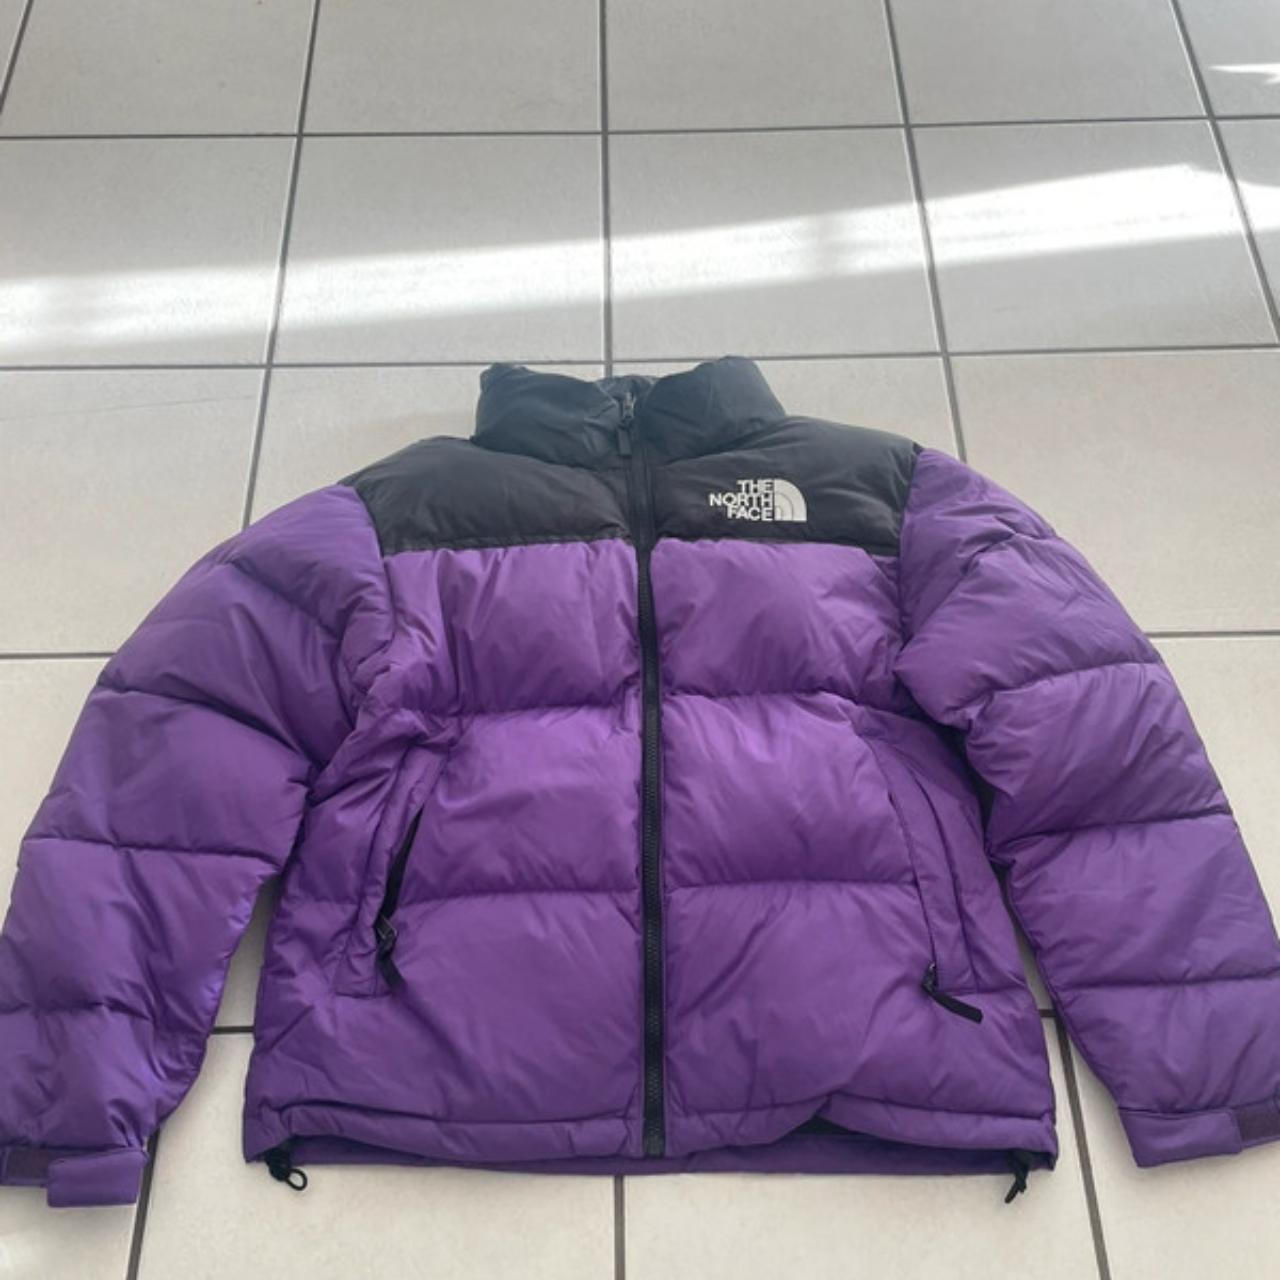 Jacket Nuptse The North Face 700 retro purple 1996 - Depop